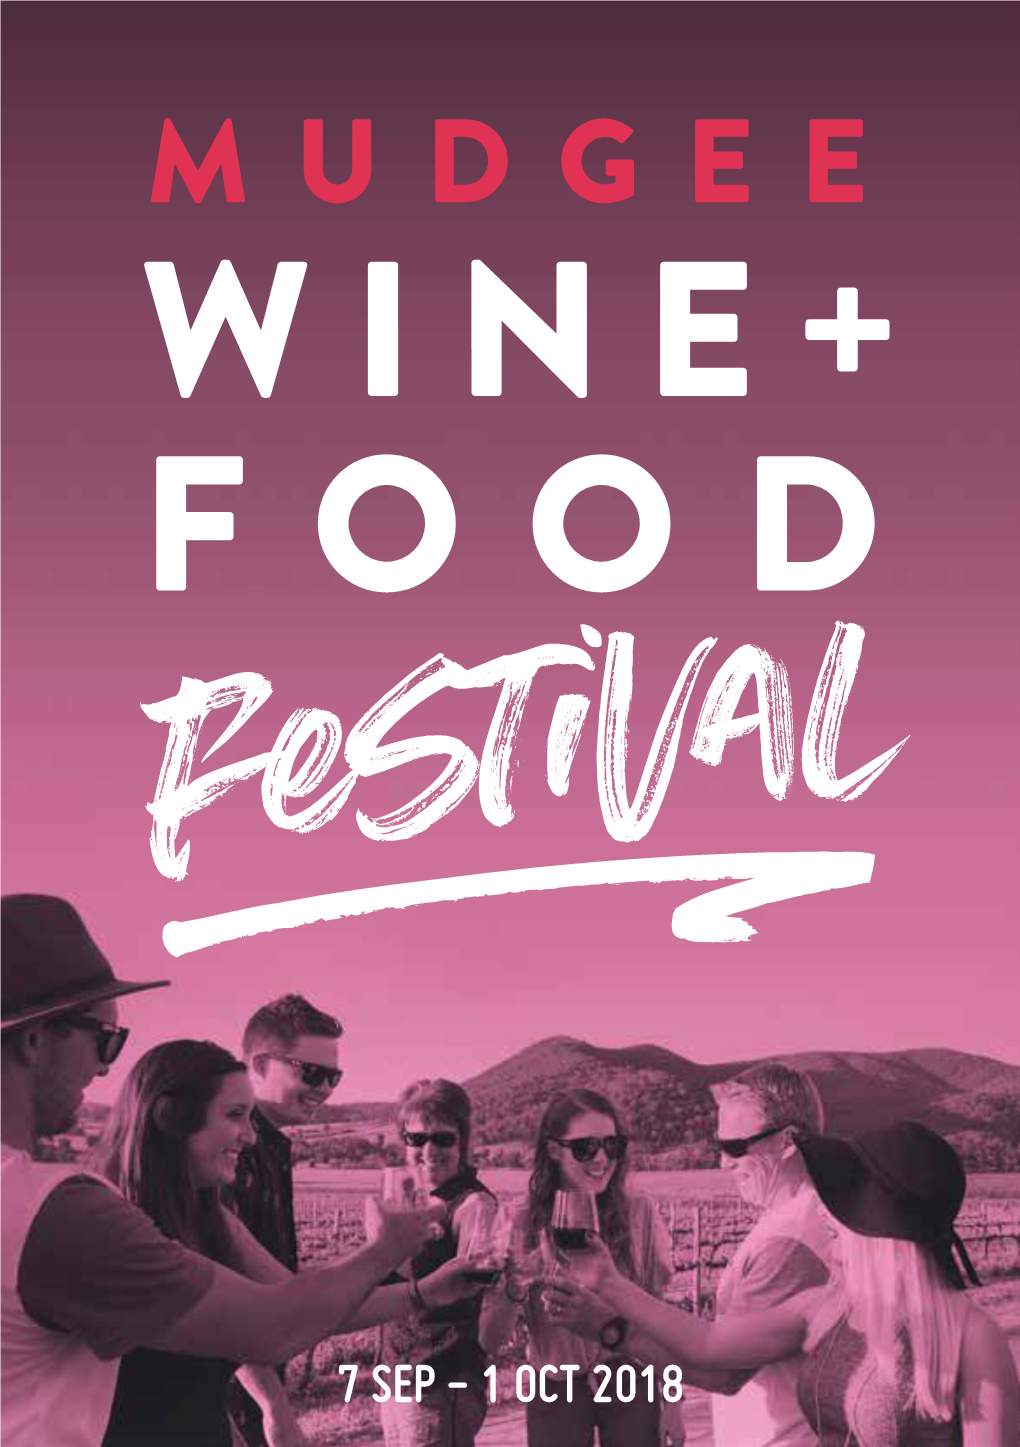 MUDGEE WINE+ Foodfestivala